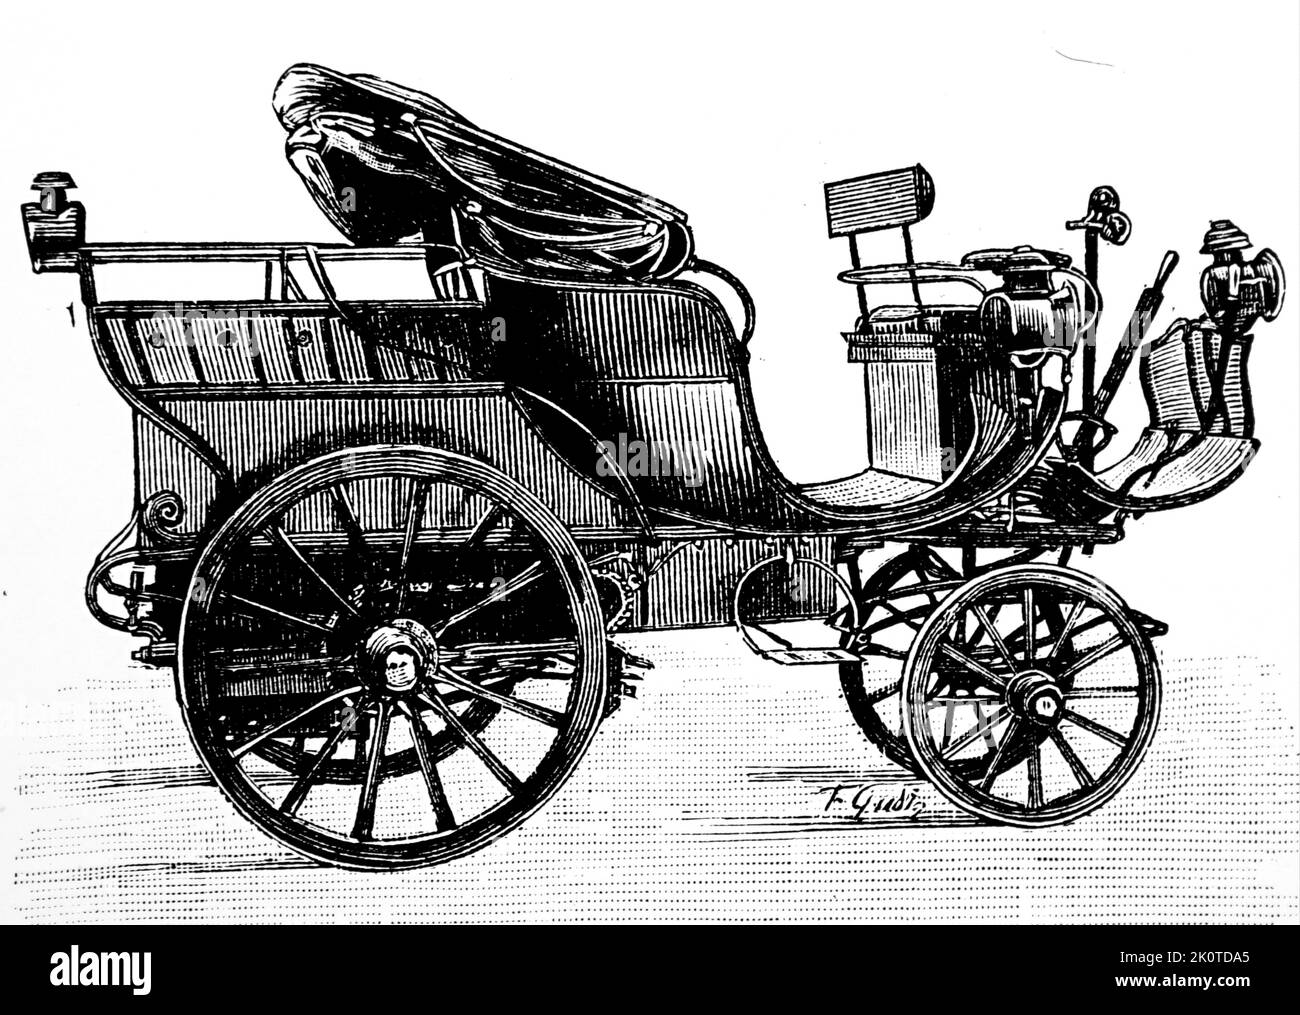 Serpollet Dampfwagen 1895. Gardner-Serpollet war Anfang des 20.. Jahrhunderts ein französischer Hersteller von Dampffahrzeugen. Stockfoto